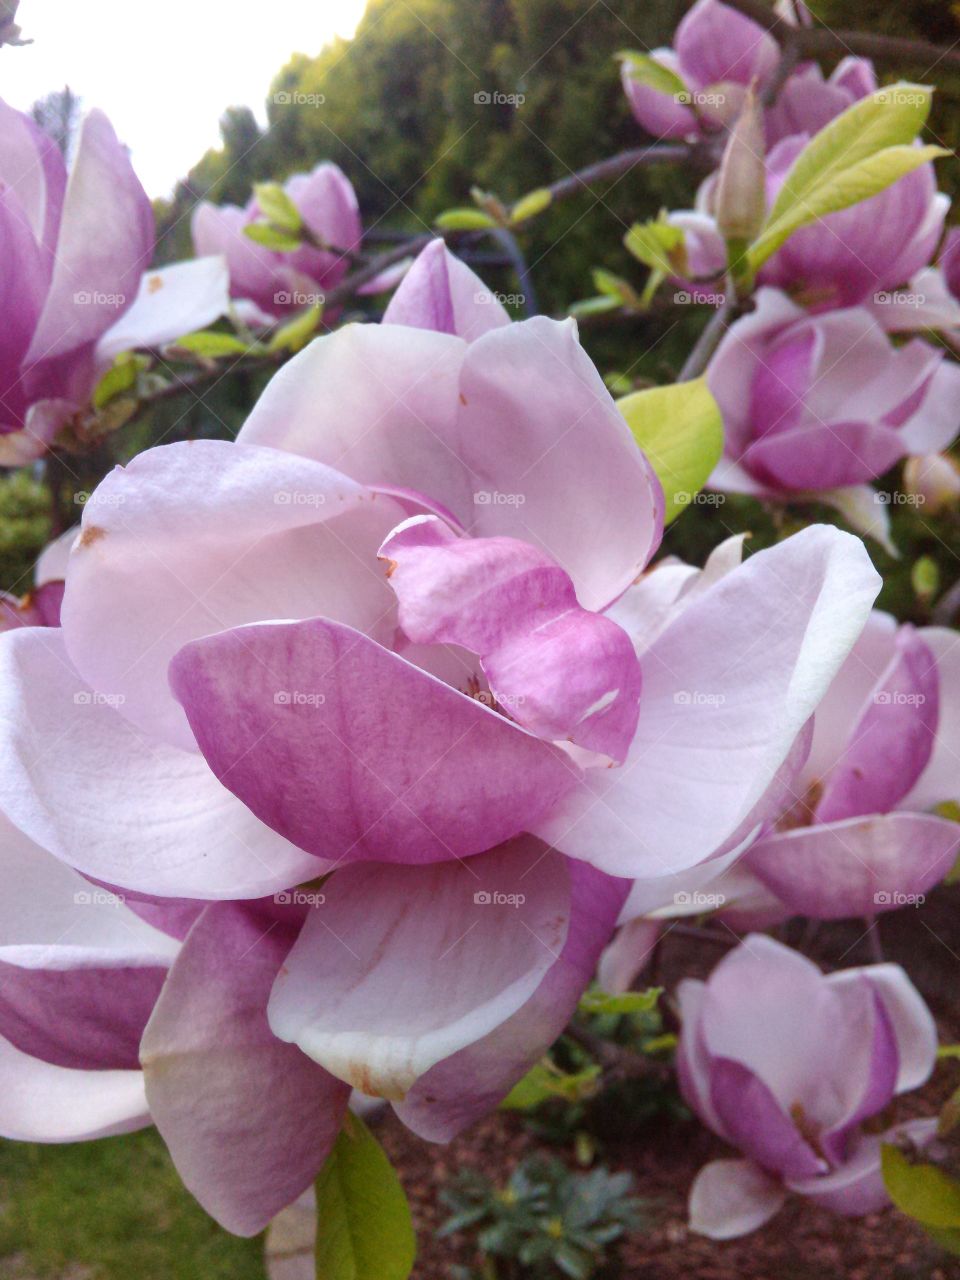 Magnolia. flowers in the garden